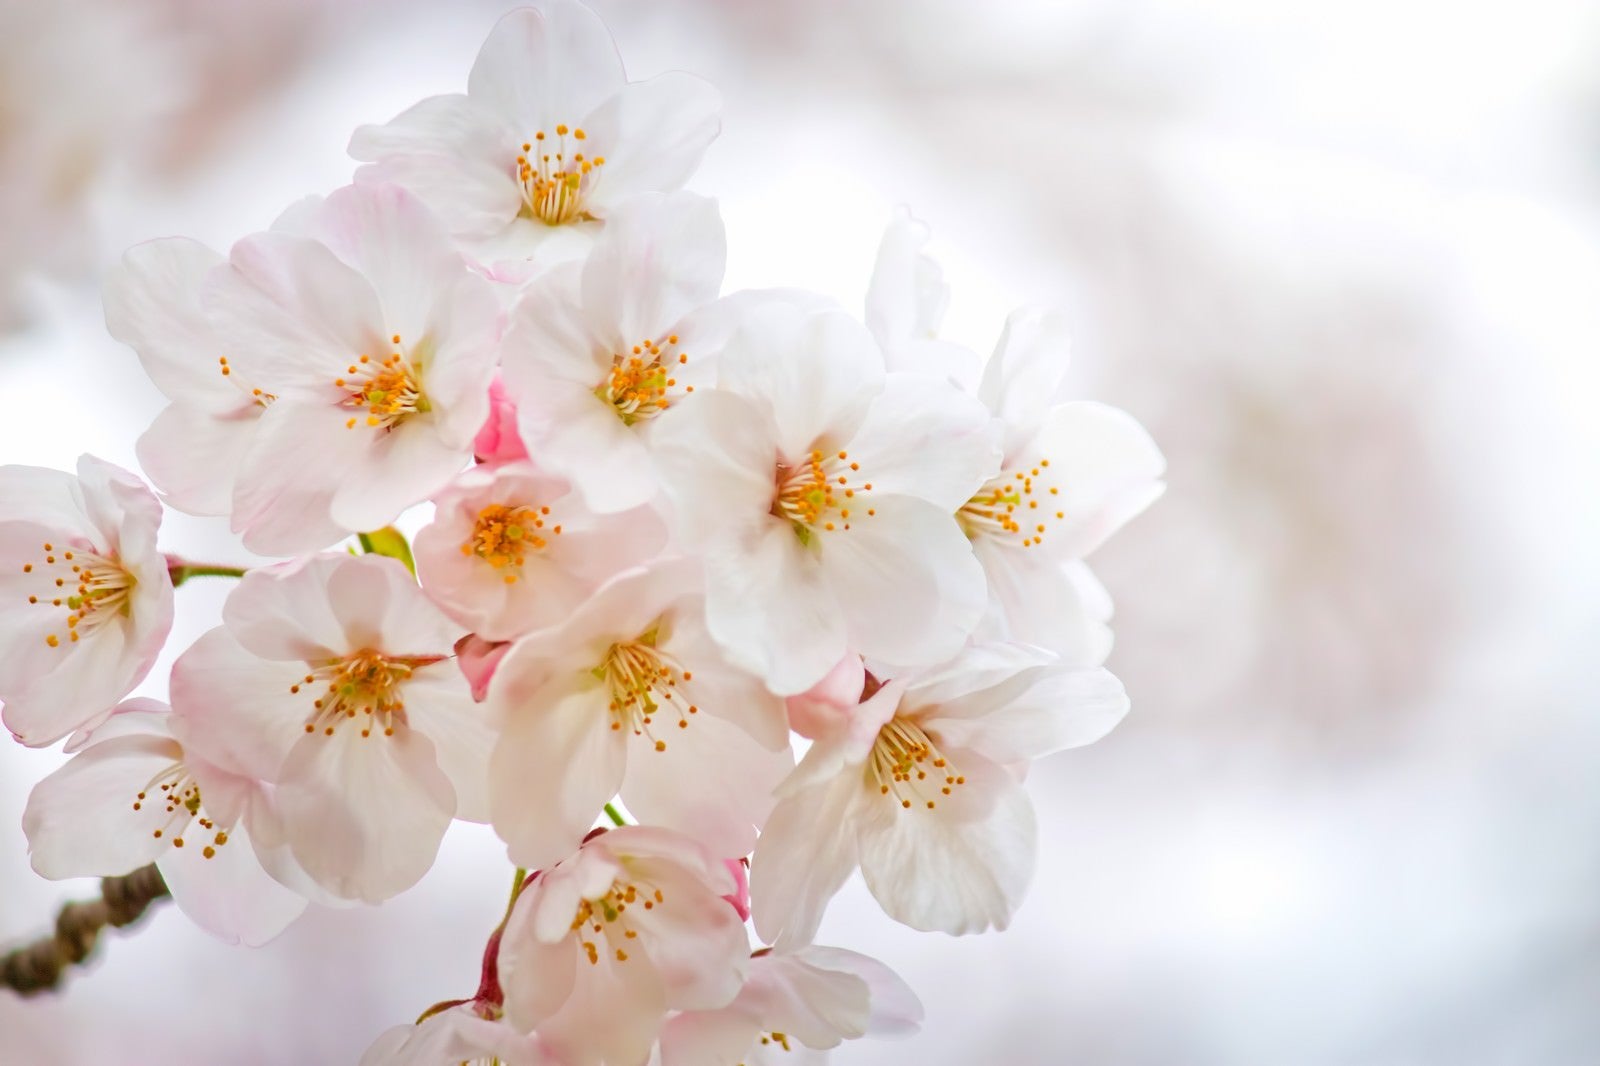 「白い花びらと満開の桜」の写真